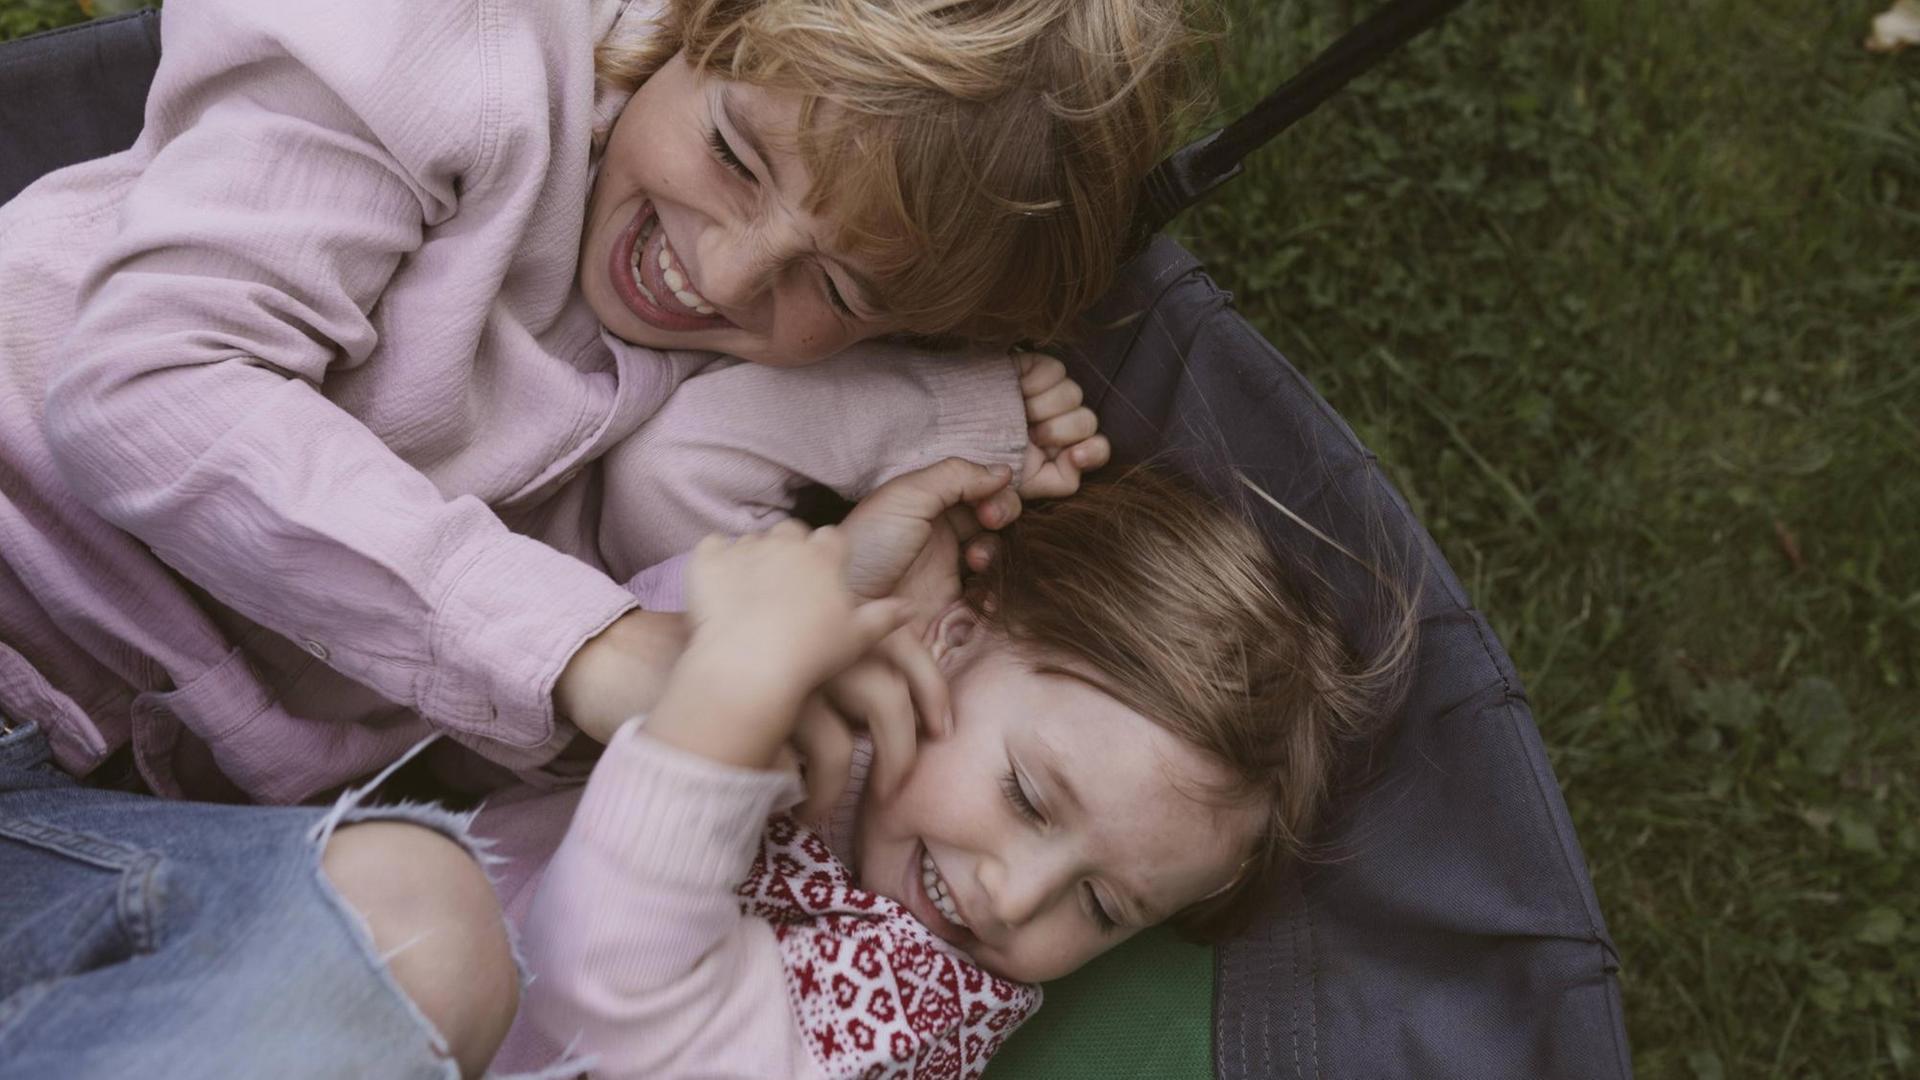  Ein kleines Mädchen und sein großer Bruder rangeln und kitzeln sich in einer Hängeschaukel. Wiese im Hintergrund.